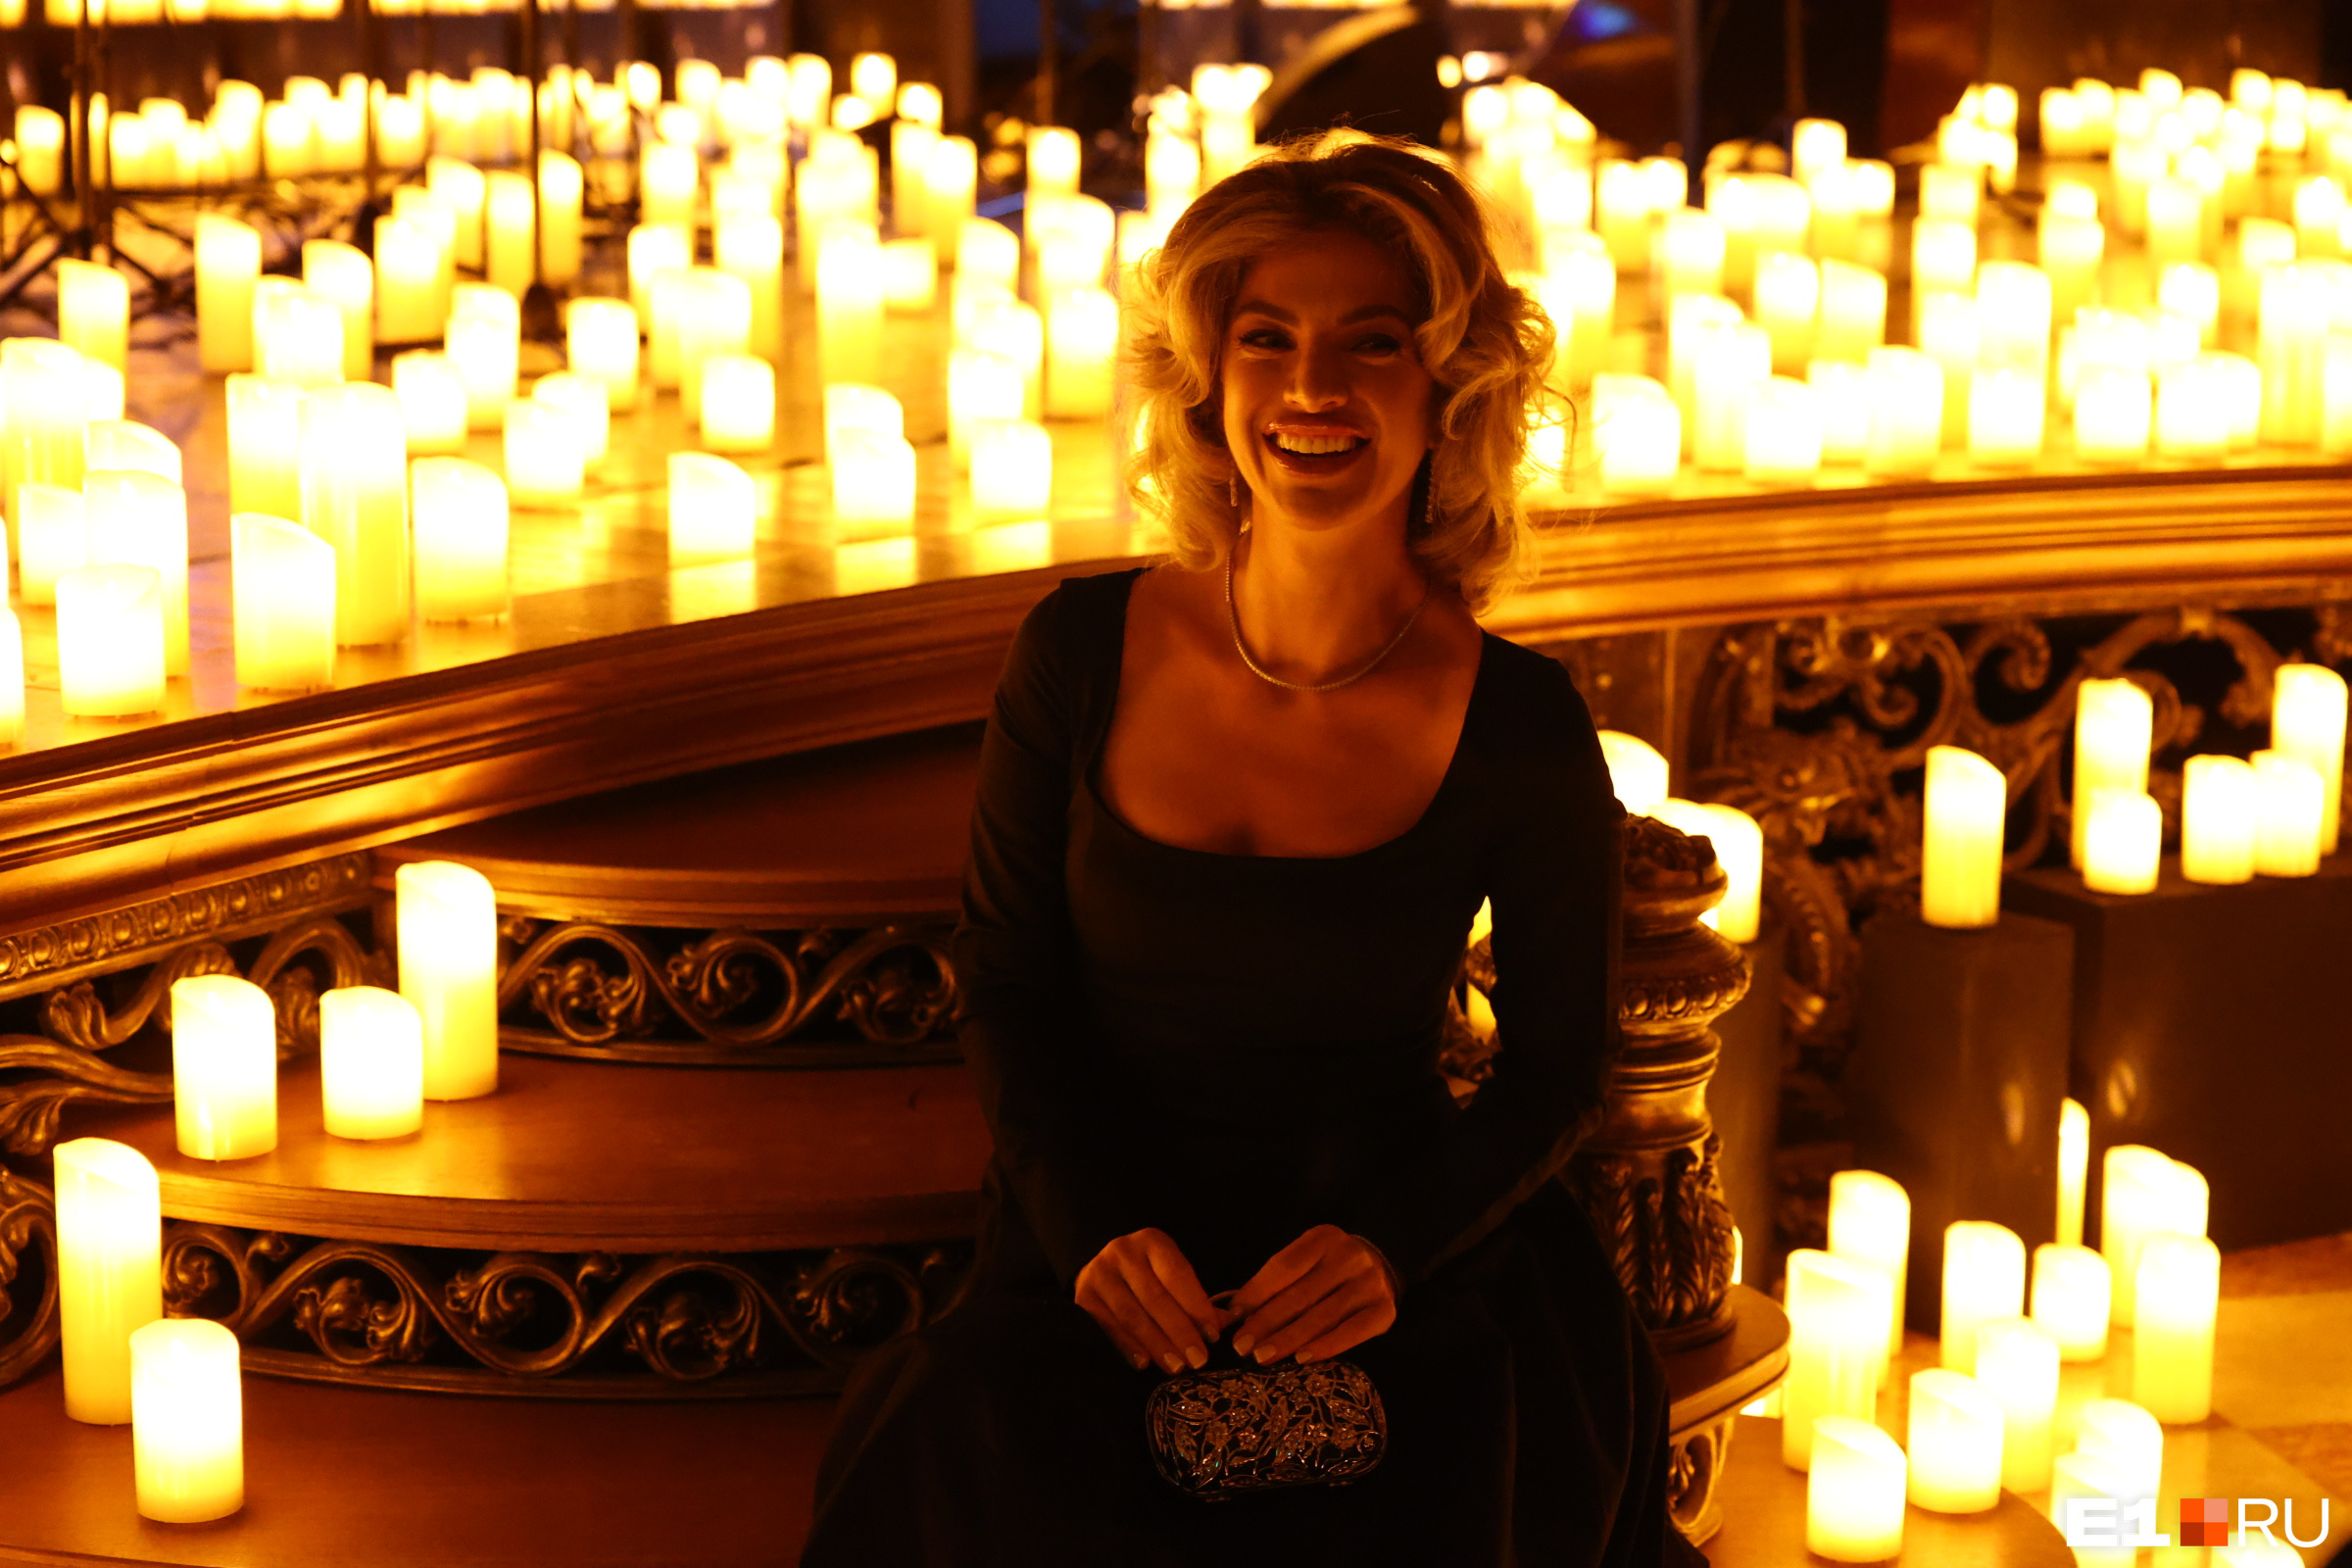 В Екатеринбурге роскошные красотки собрались в театре для богачей при свечах. Показываем, зачем